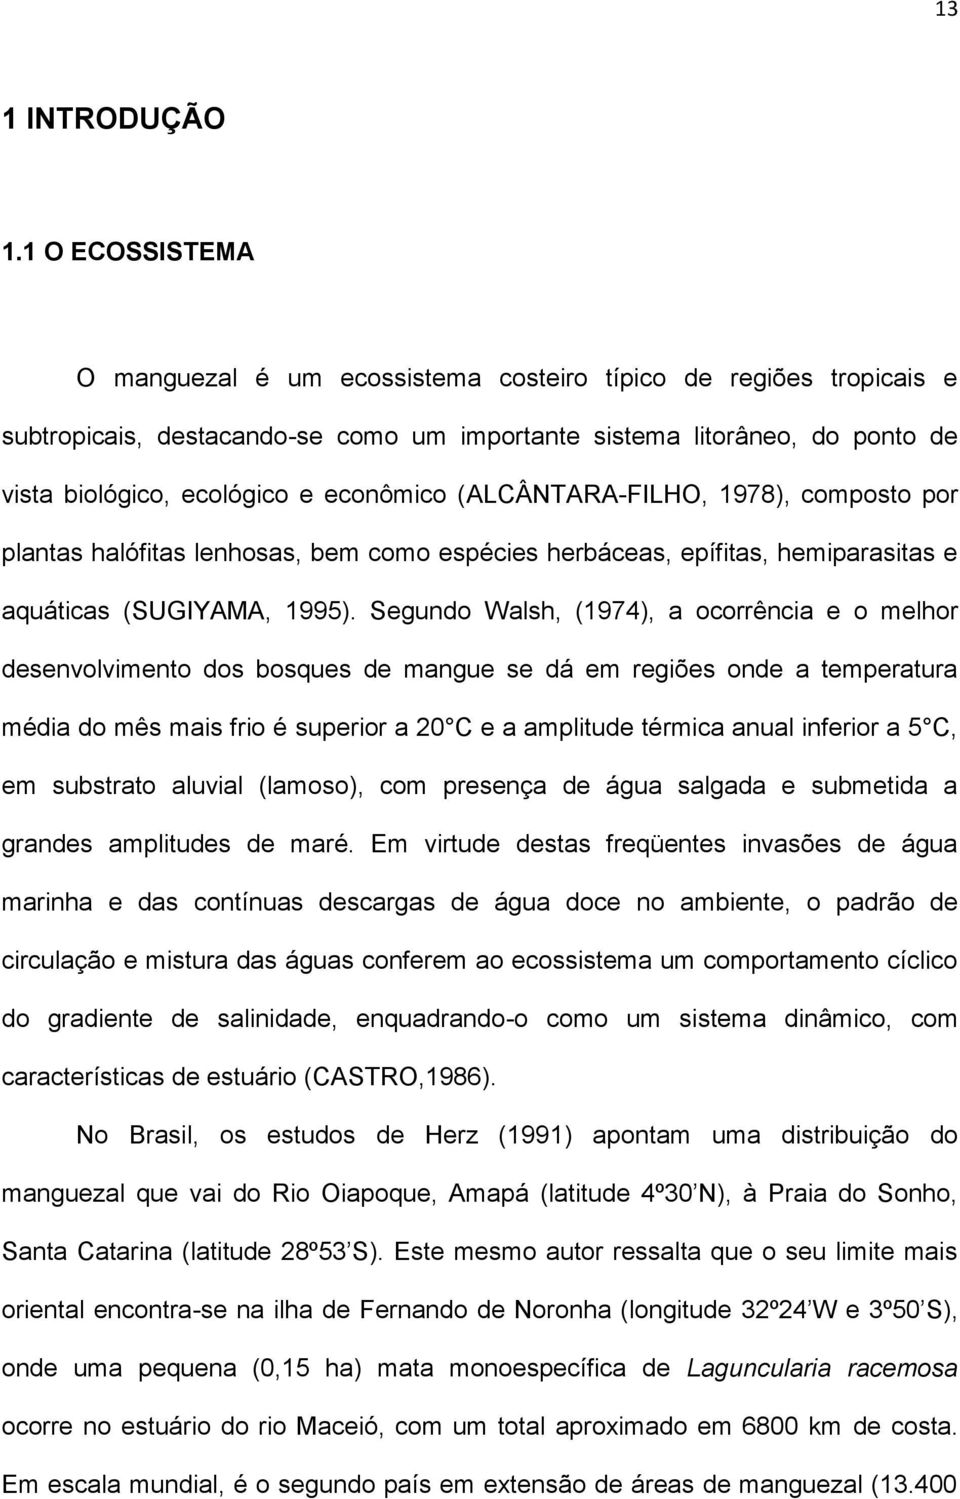 econômico (ALCÂNTARA-FILHO, 1978), composto por plantas halófitas lenhosas, bem como espécies herbáceas, epífitas, hemiparasitas e aquáticas (SUGIYAMA, 1995).